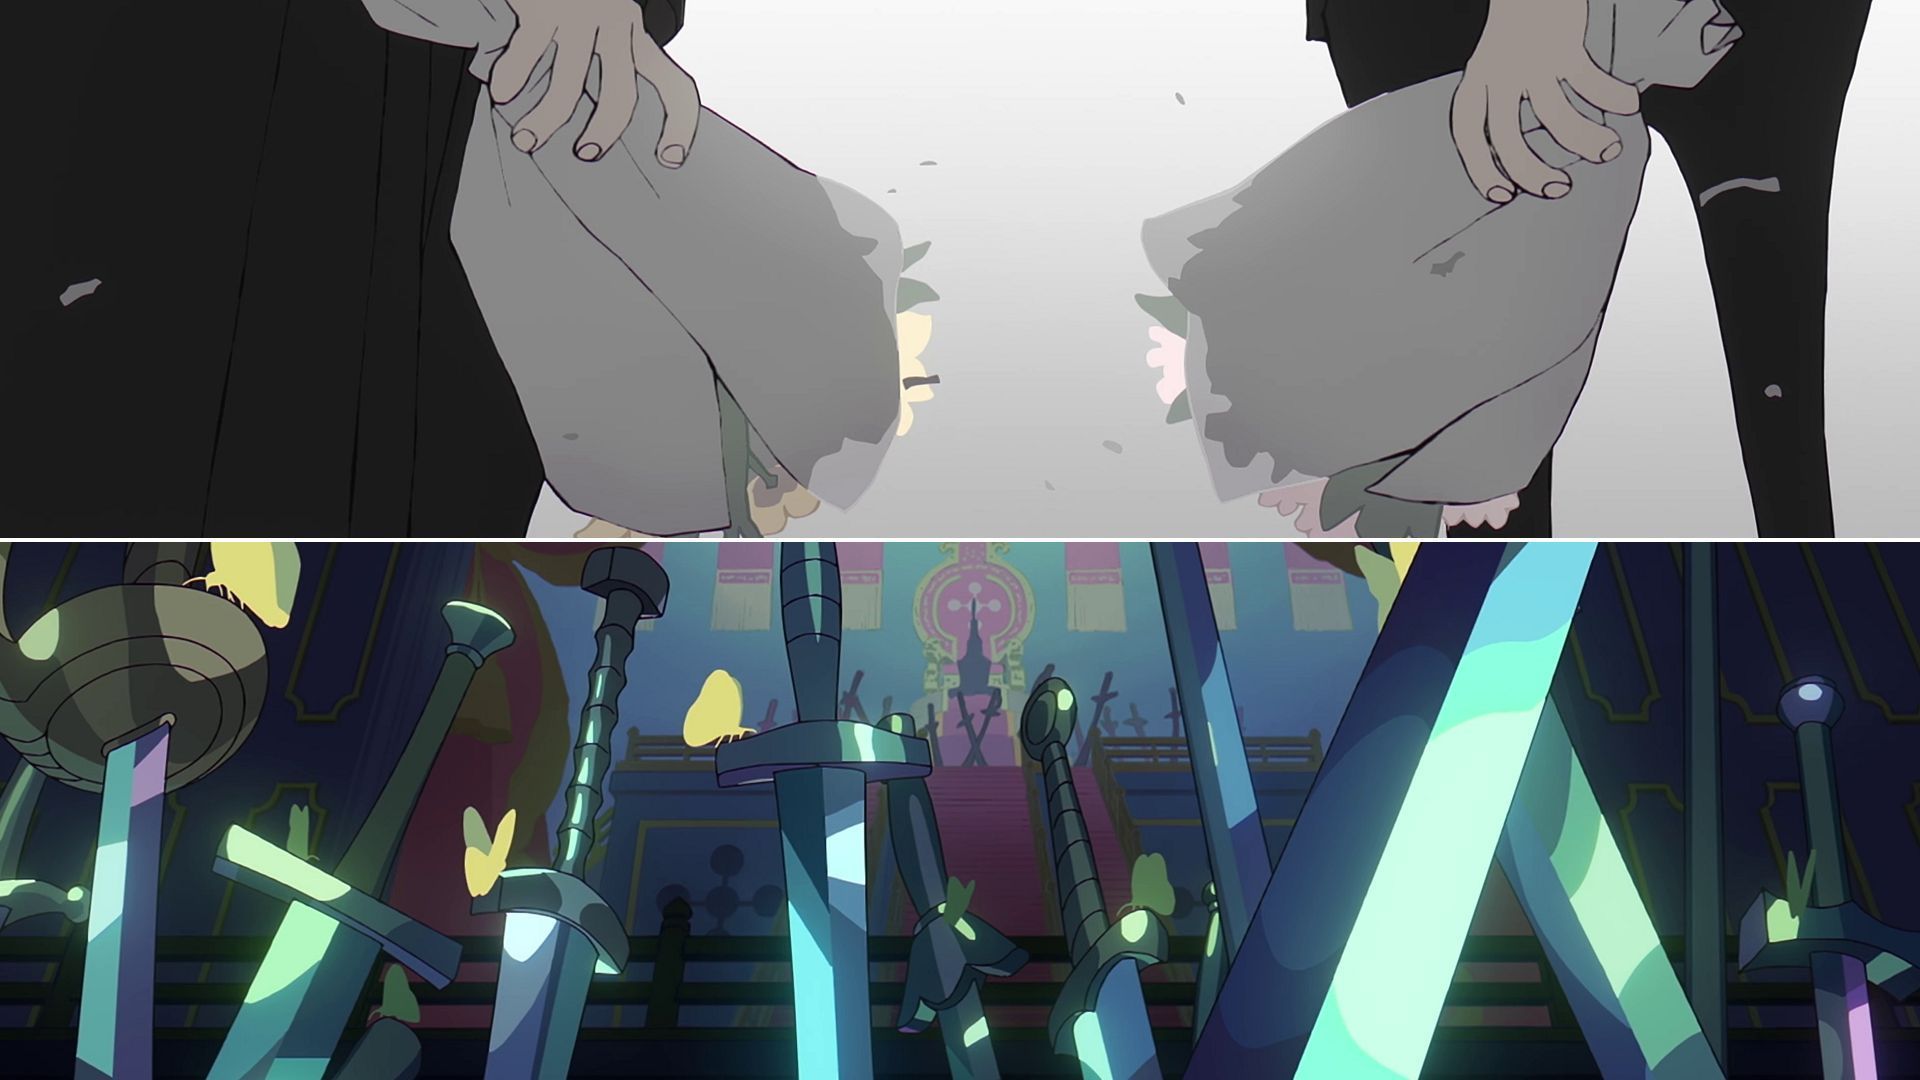 Imu-sama is a curse to the world (Image via Toei Animation, One Piece)